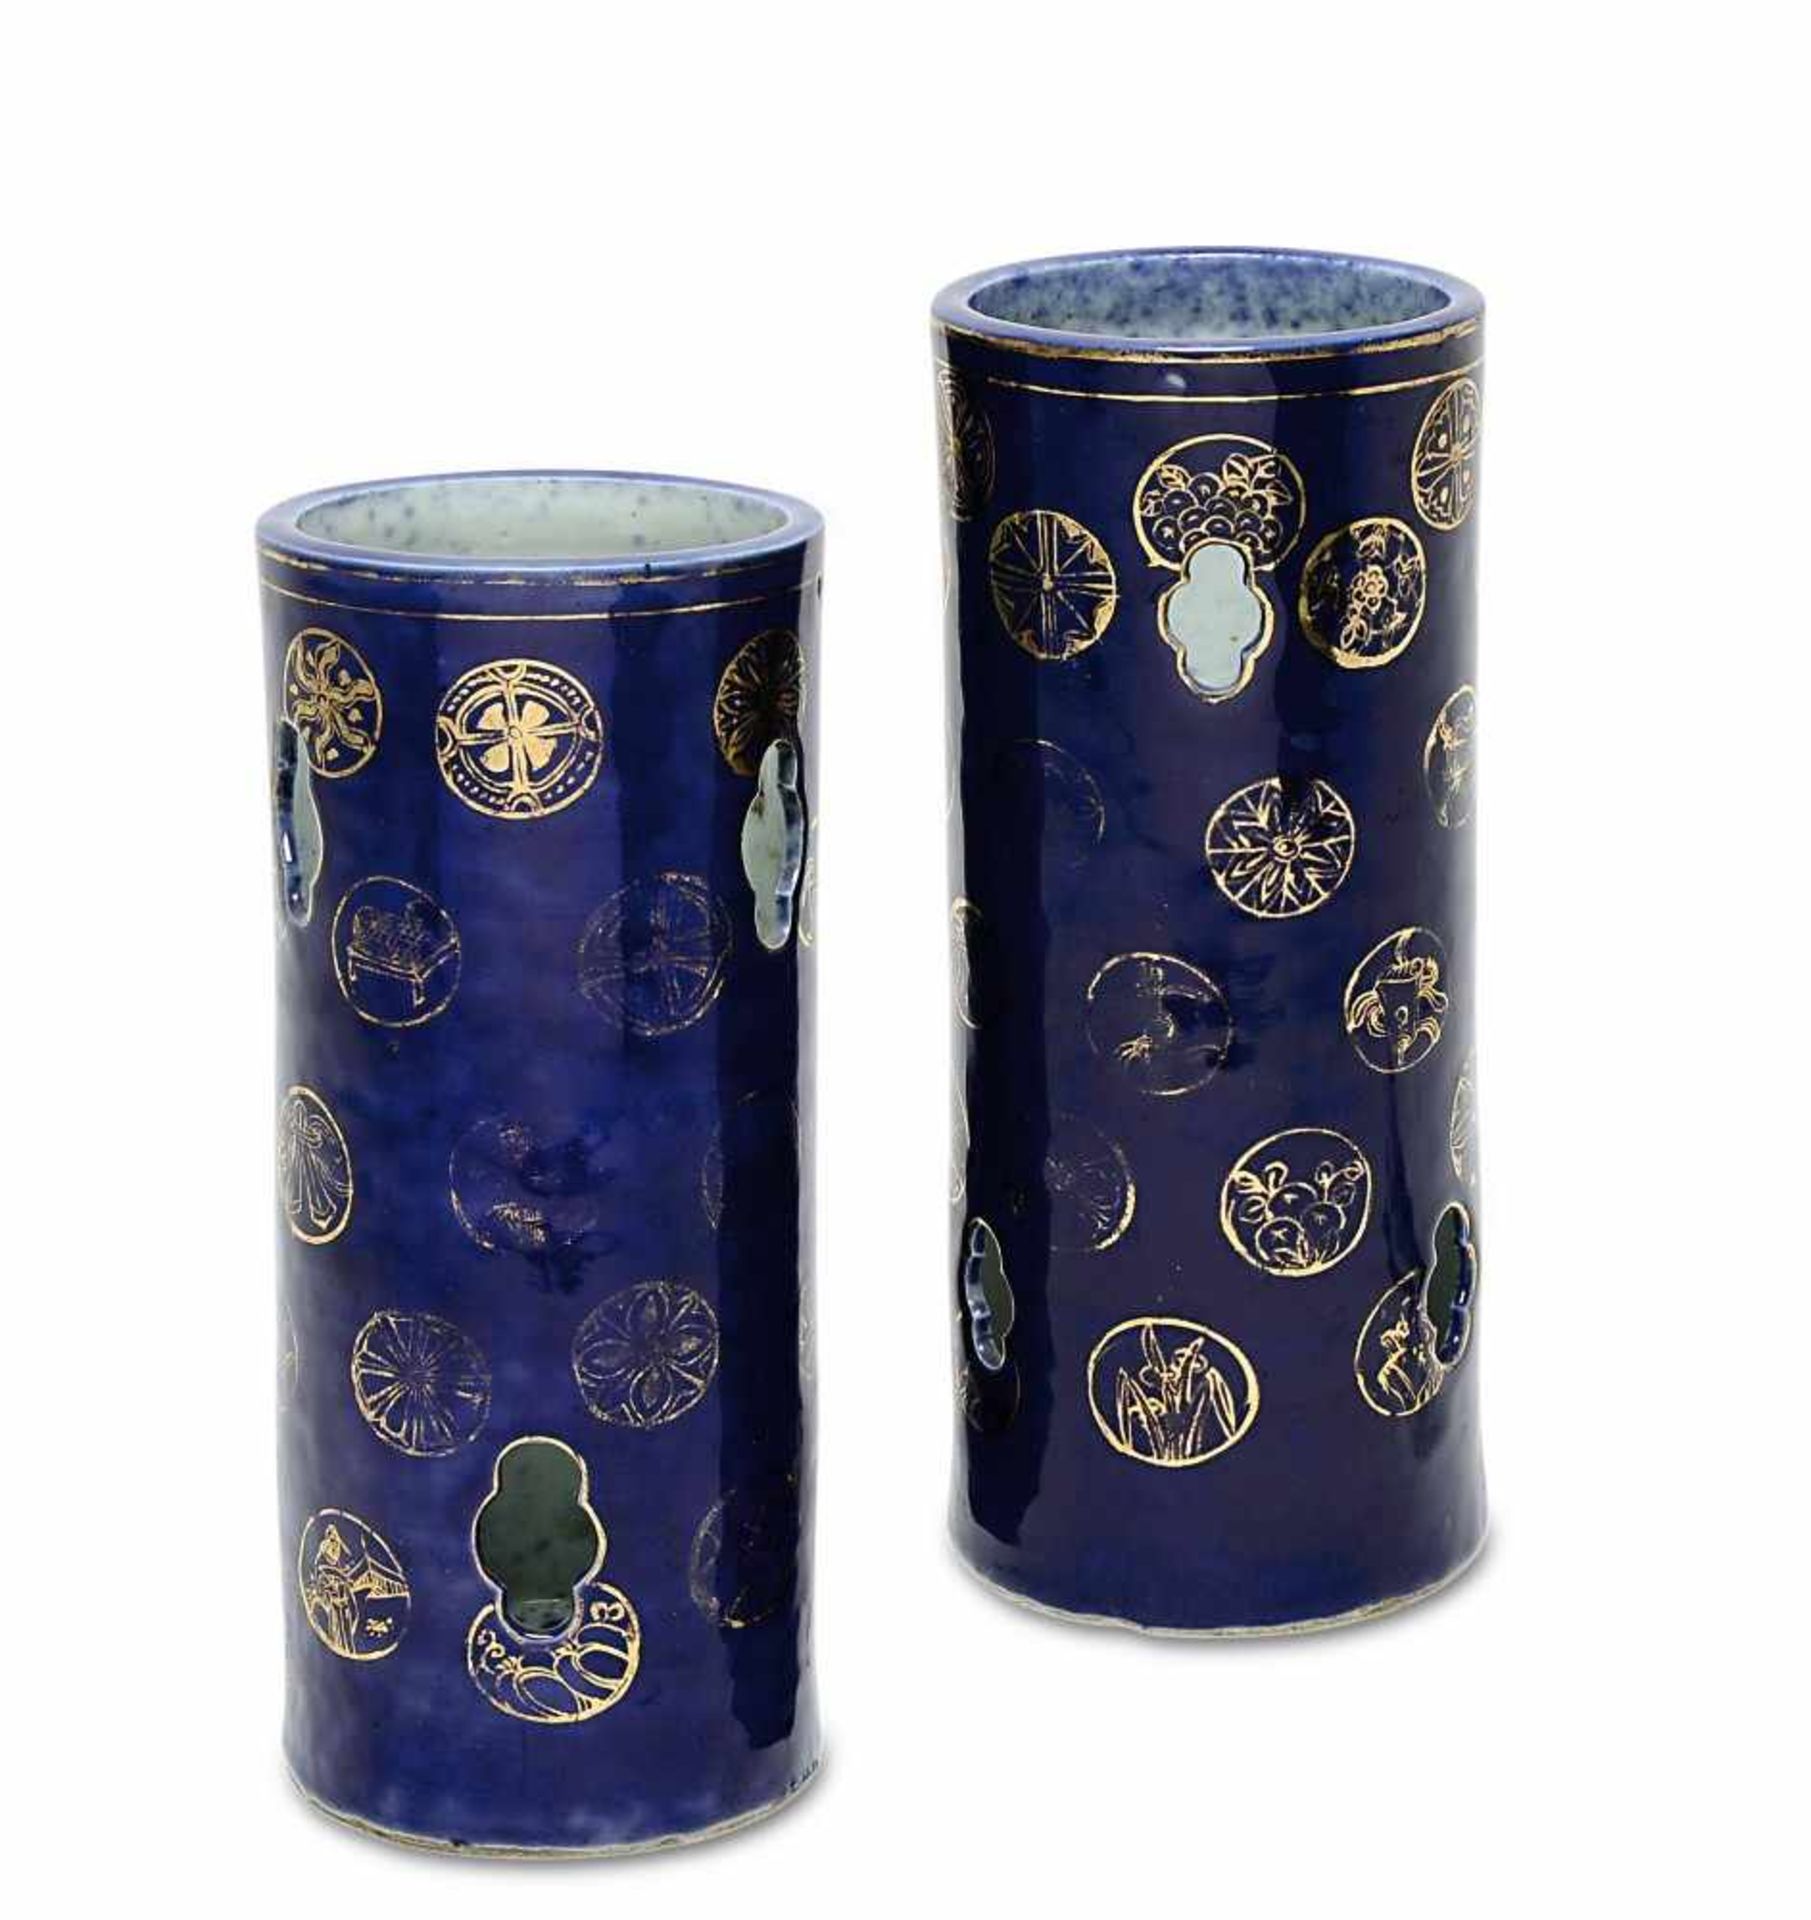 Ein Paar Pinselbecher China Porzellan. Zylindrisch mit vierpassigen Durchbrüchen. Auf blauem Grund